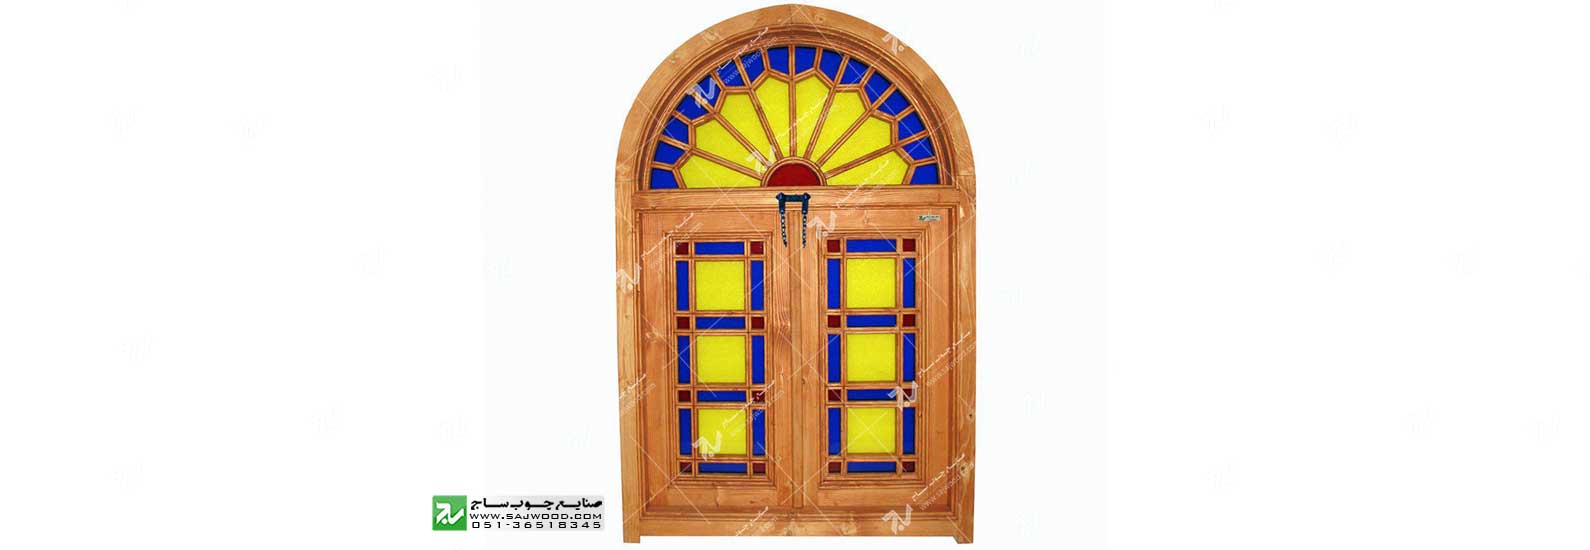 پنجره چوبی سنتی ارسی شیشه رنگی گره چینی مشبک طرح شمس کد W201